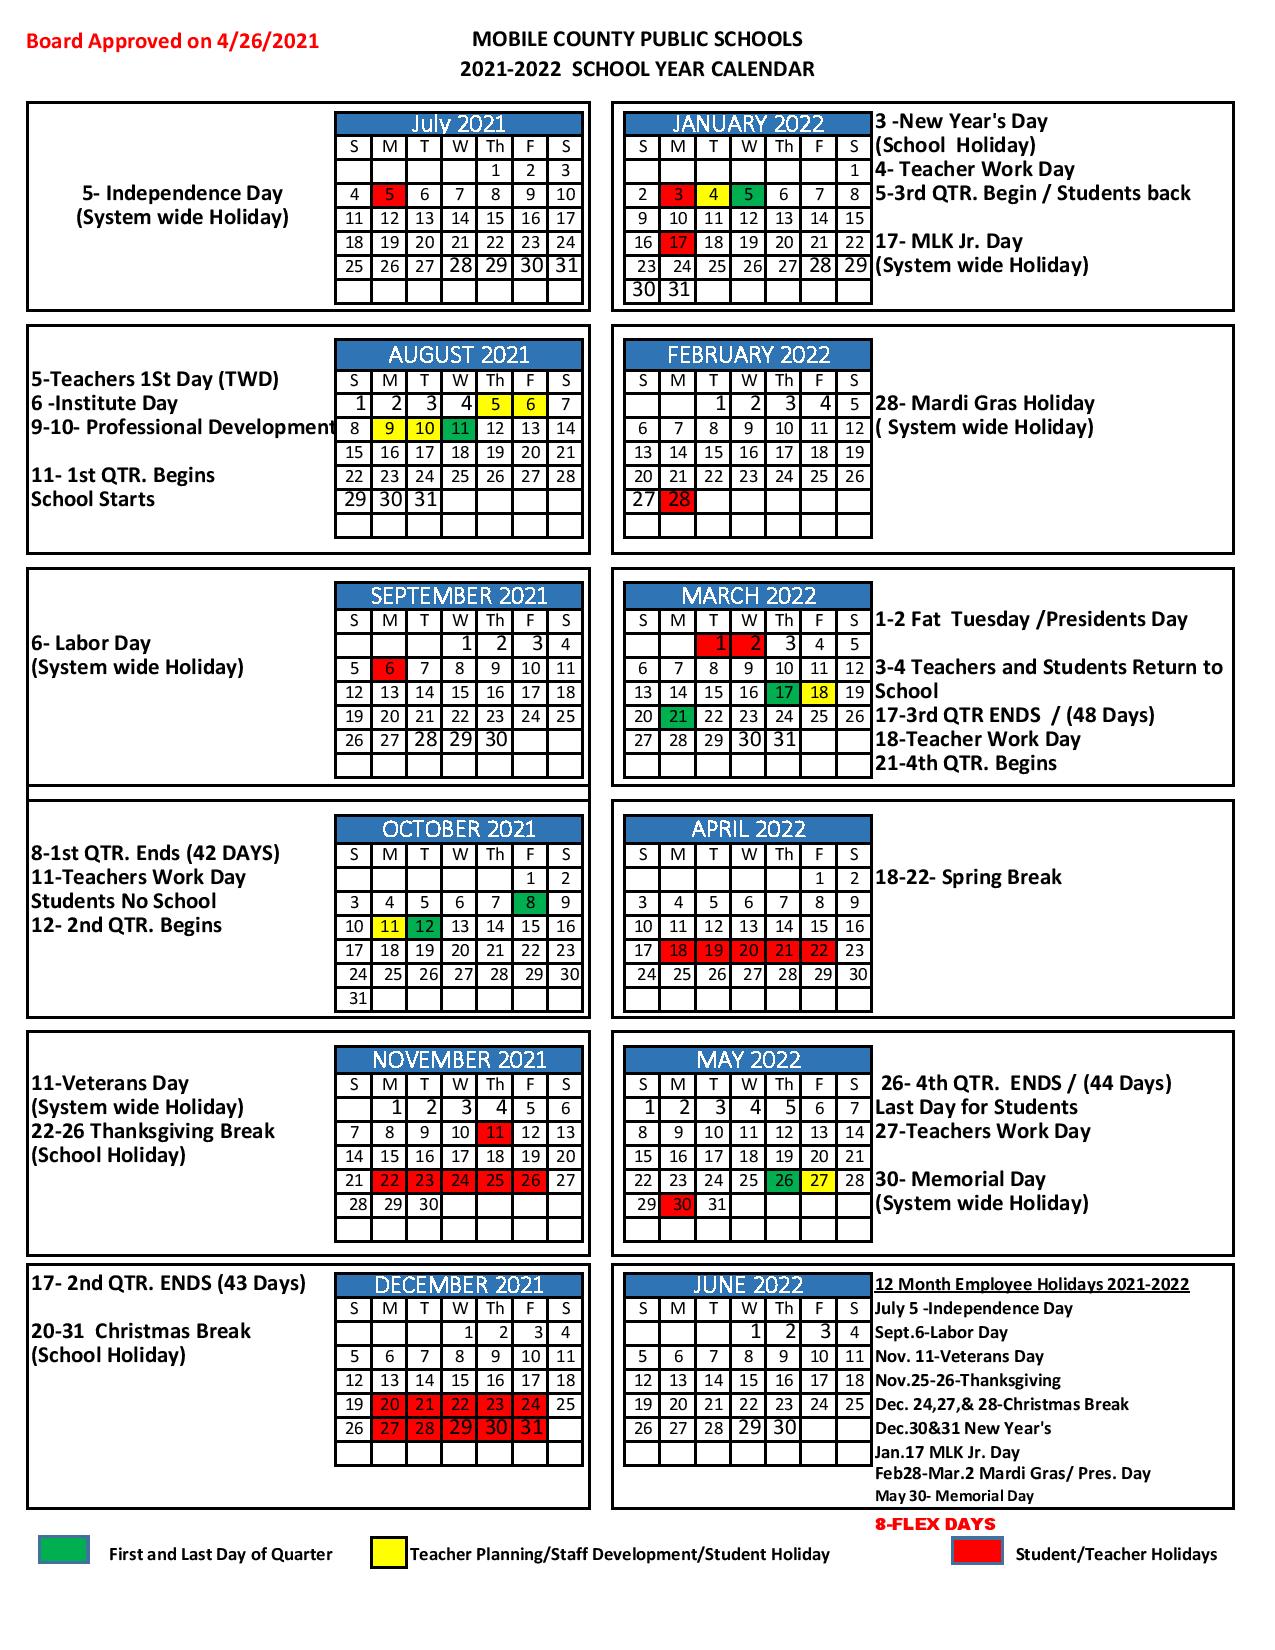 Mcpss Calendar 2022 Mobile County Public Schools Calendar 2021-2022